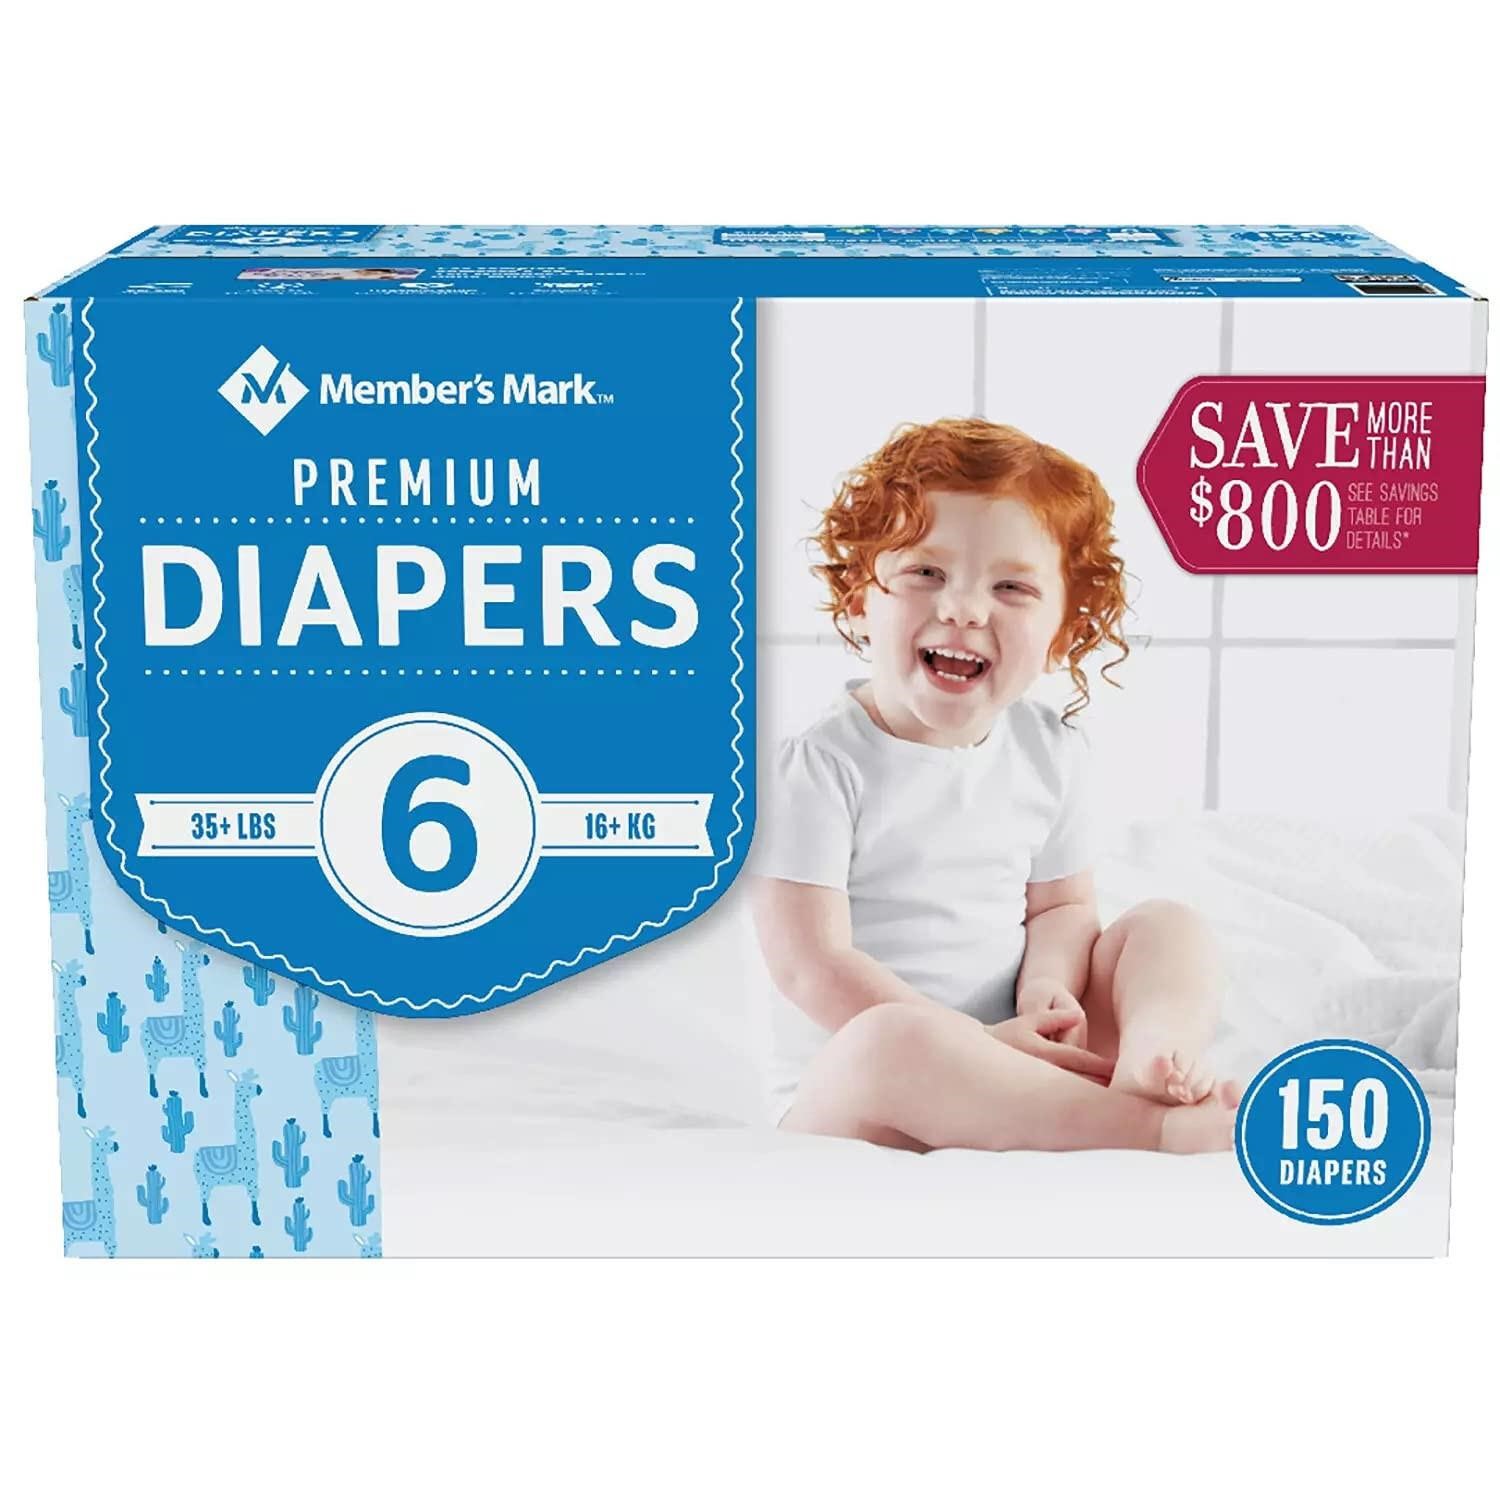 Member's Mark Premium Baby Diapers, S6 35+ Lbs.